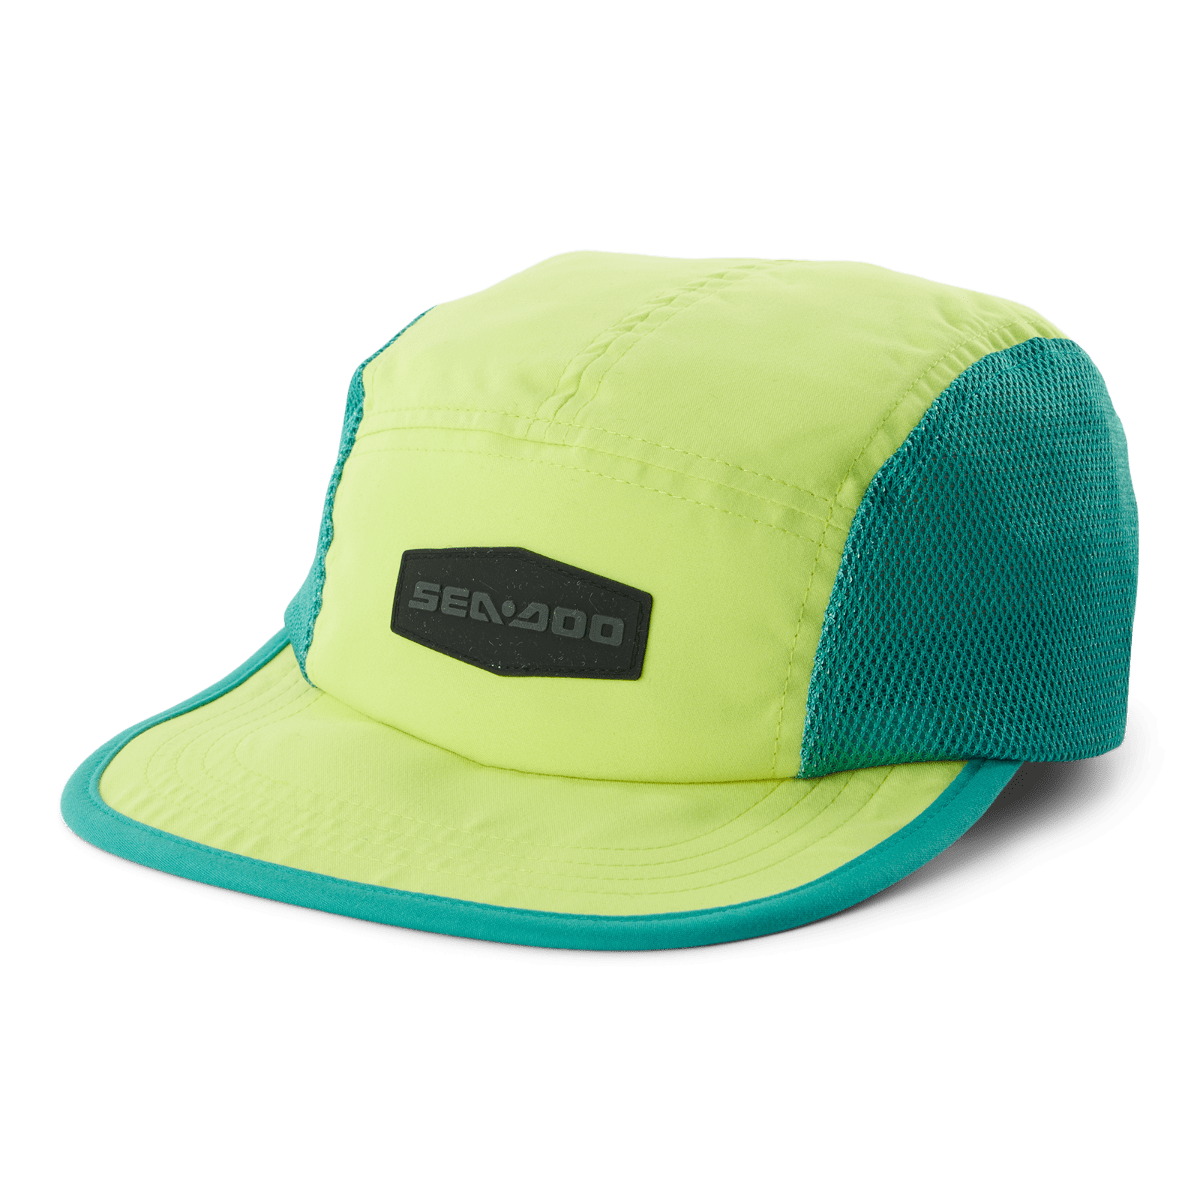 Shop Sea-Doo Caps & Hats at